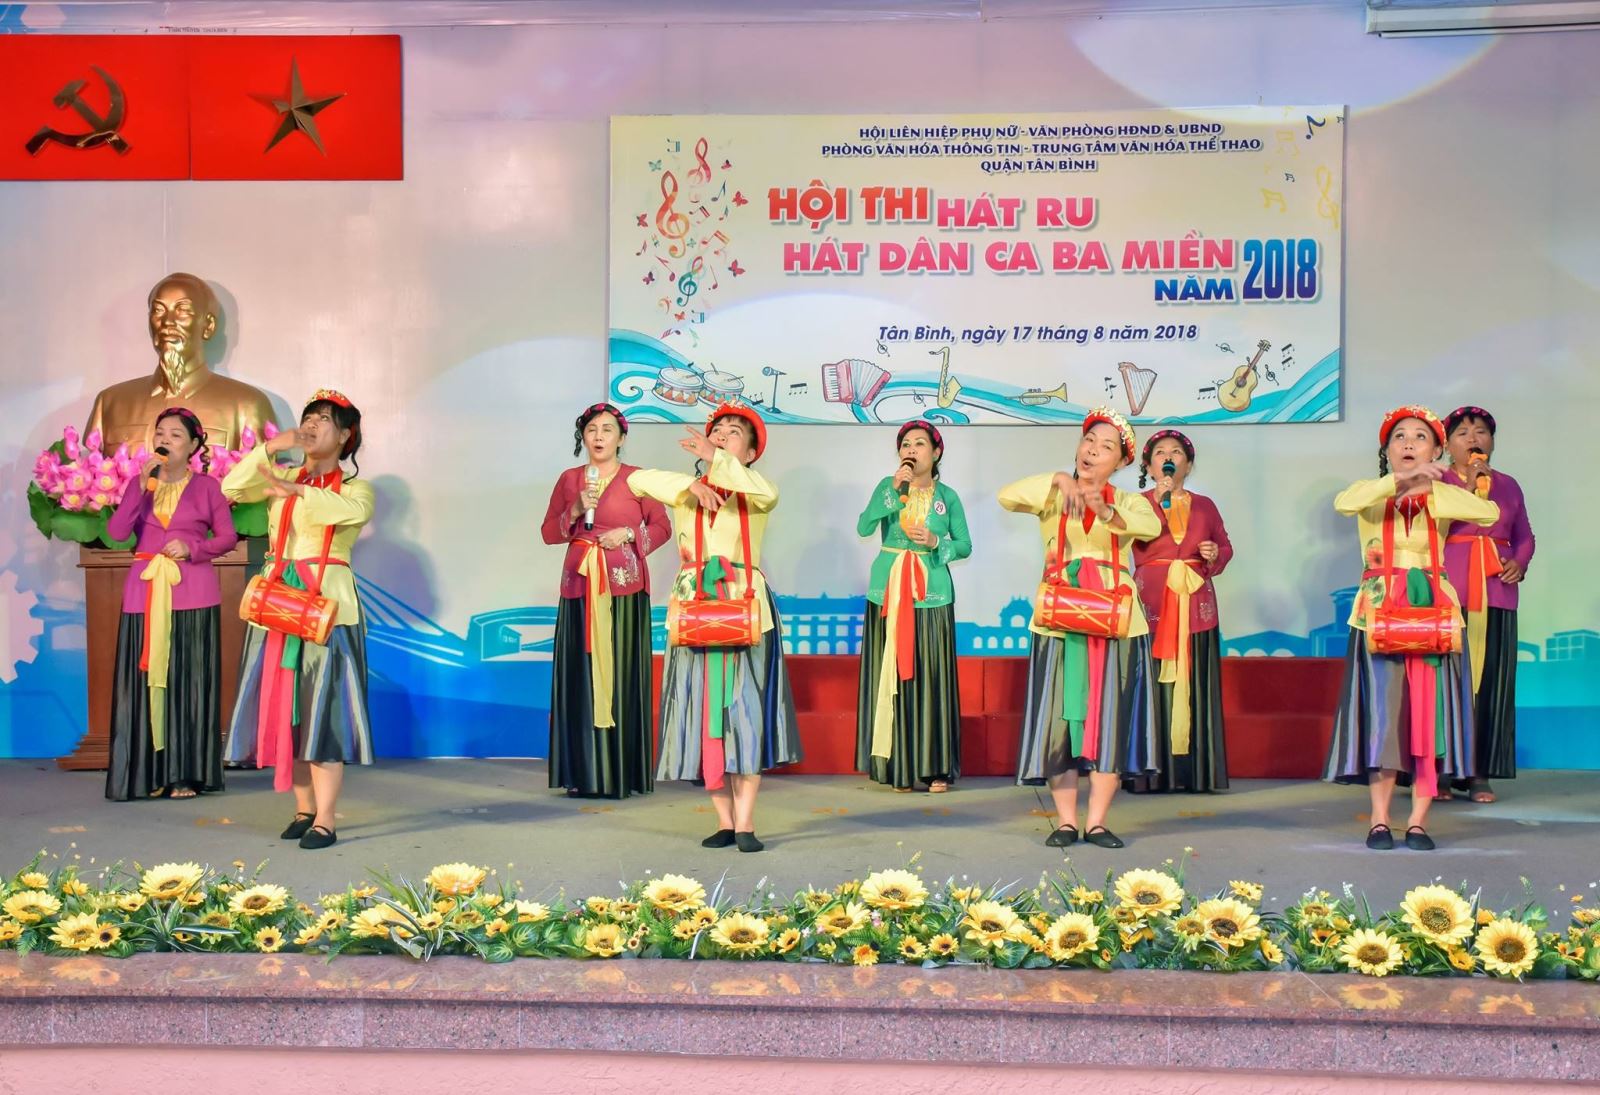 Liên hoan Hát ru, hát dân ca 03 miền Bắc - Trung - Nam quận Tân Bình lần 2 - năm 2018.